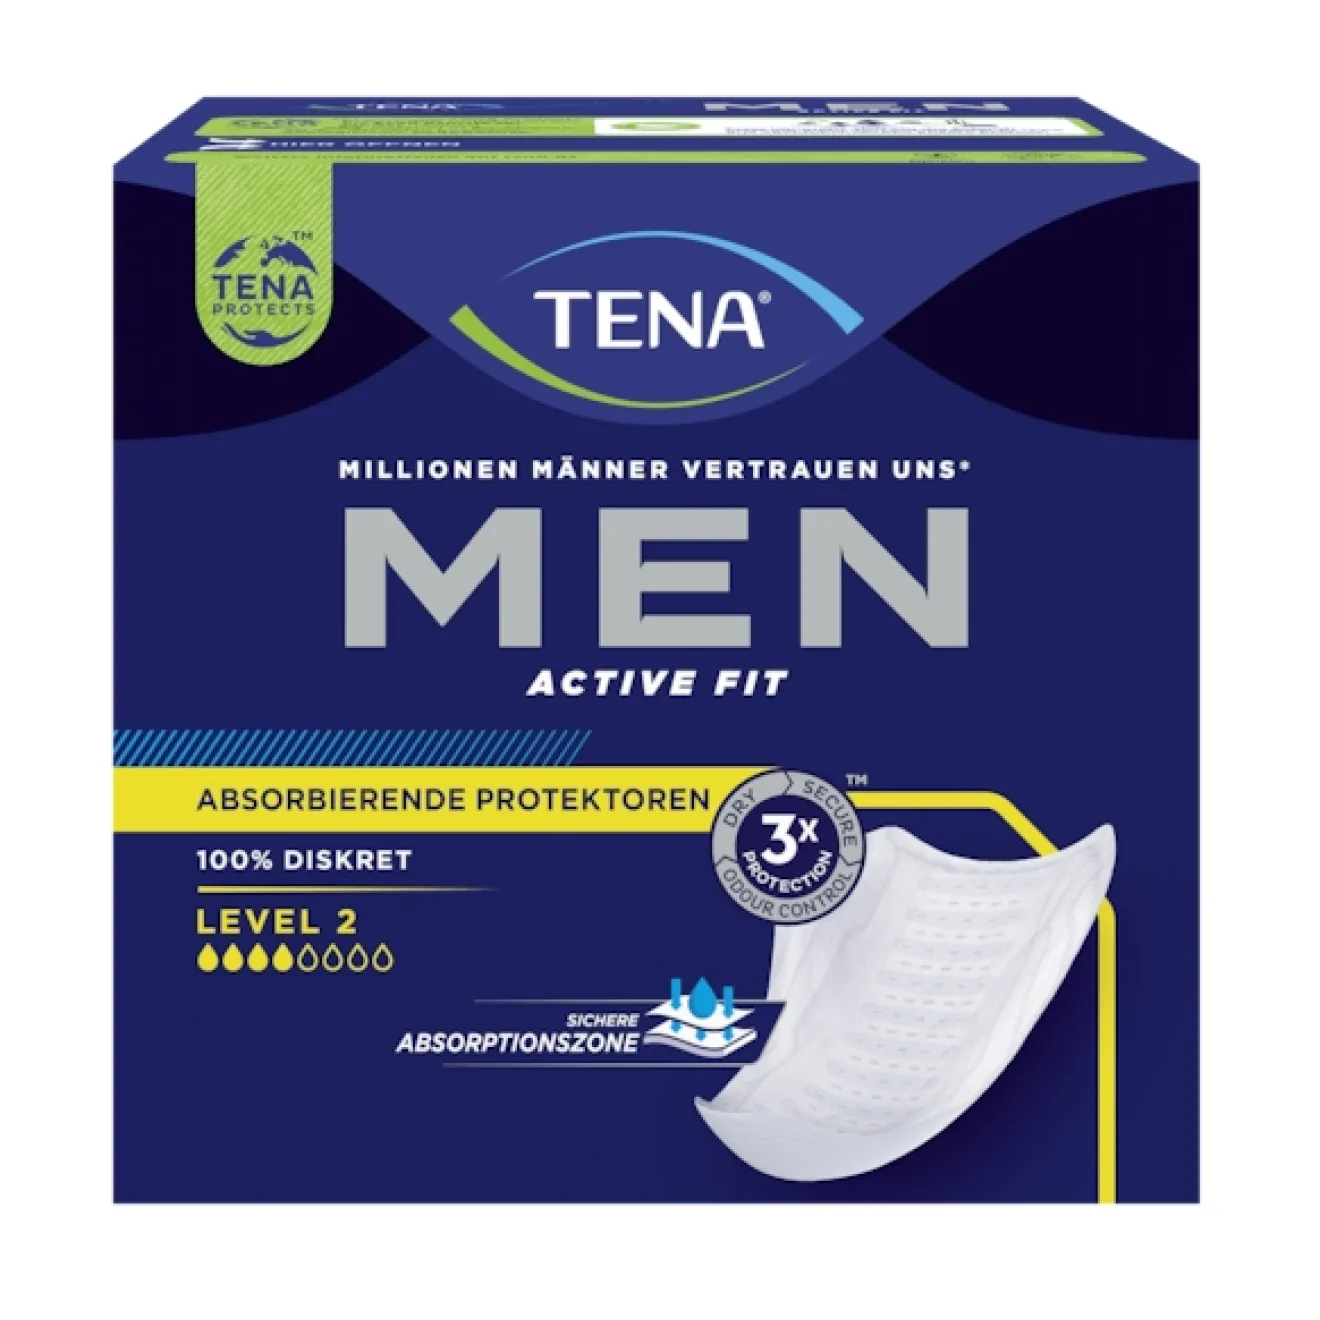 TENA MEN Active Fit Level 2 Inkontinenz Einlagen 20 ST